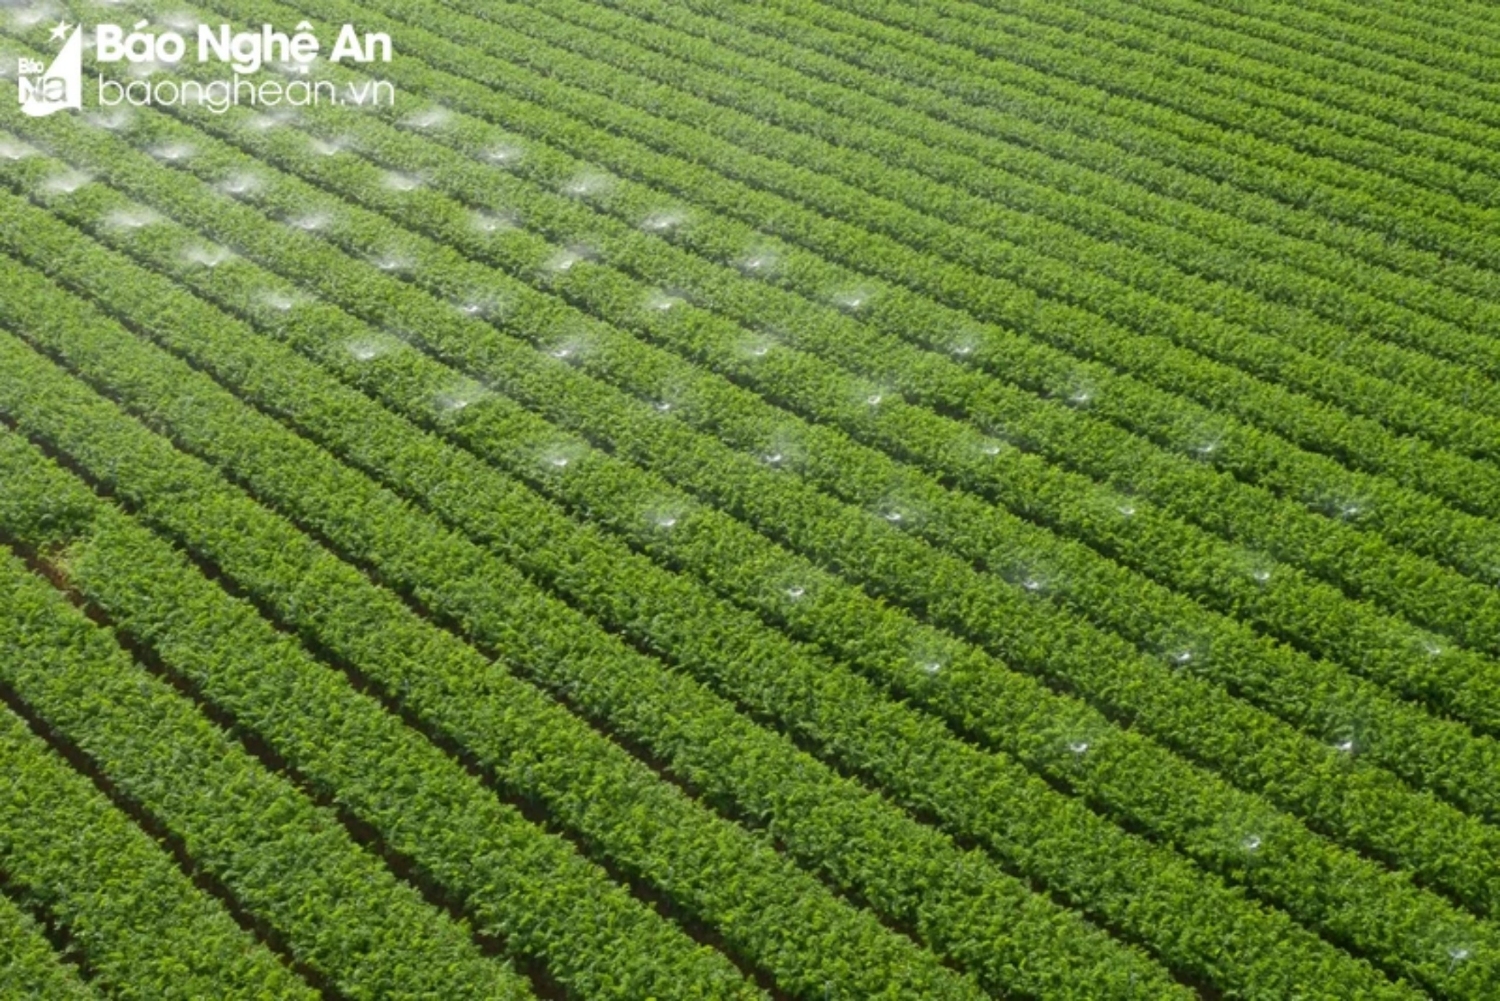 Cánh đồng cà rốt xanh bạt ngàn của xã Quỳnh Liên được trồng theo tiêu chuẩn VietGap. Ảnh: Thanh Thuỷ